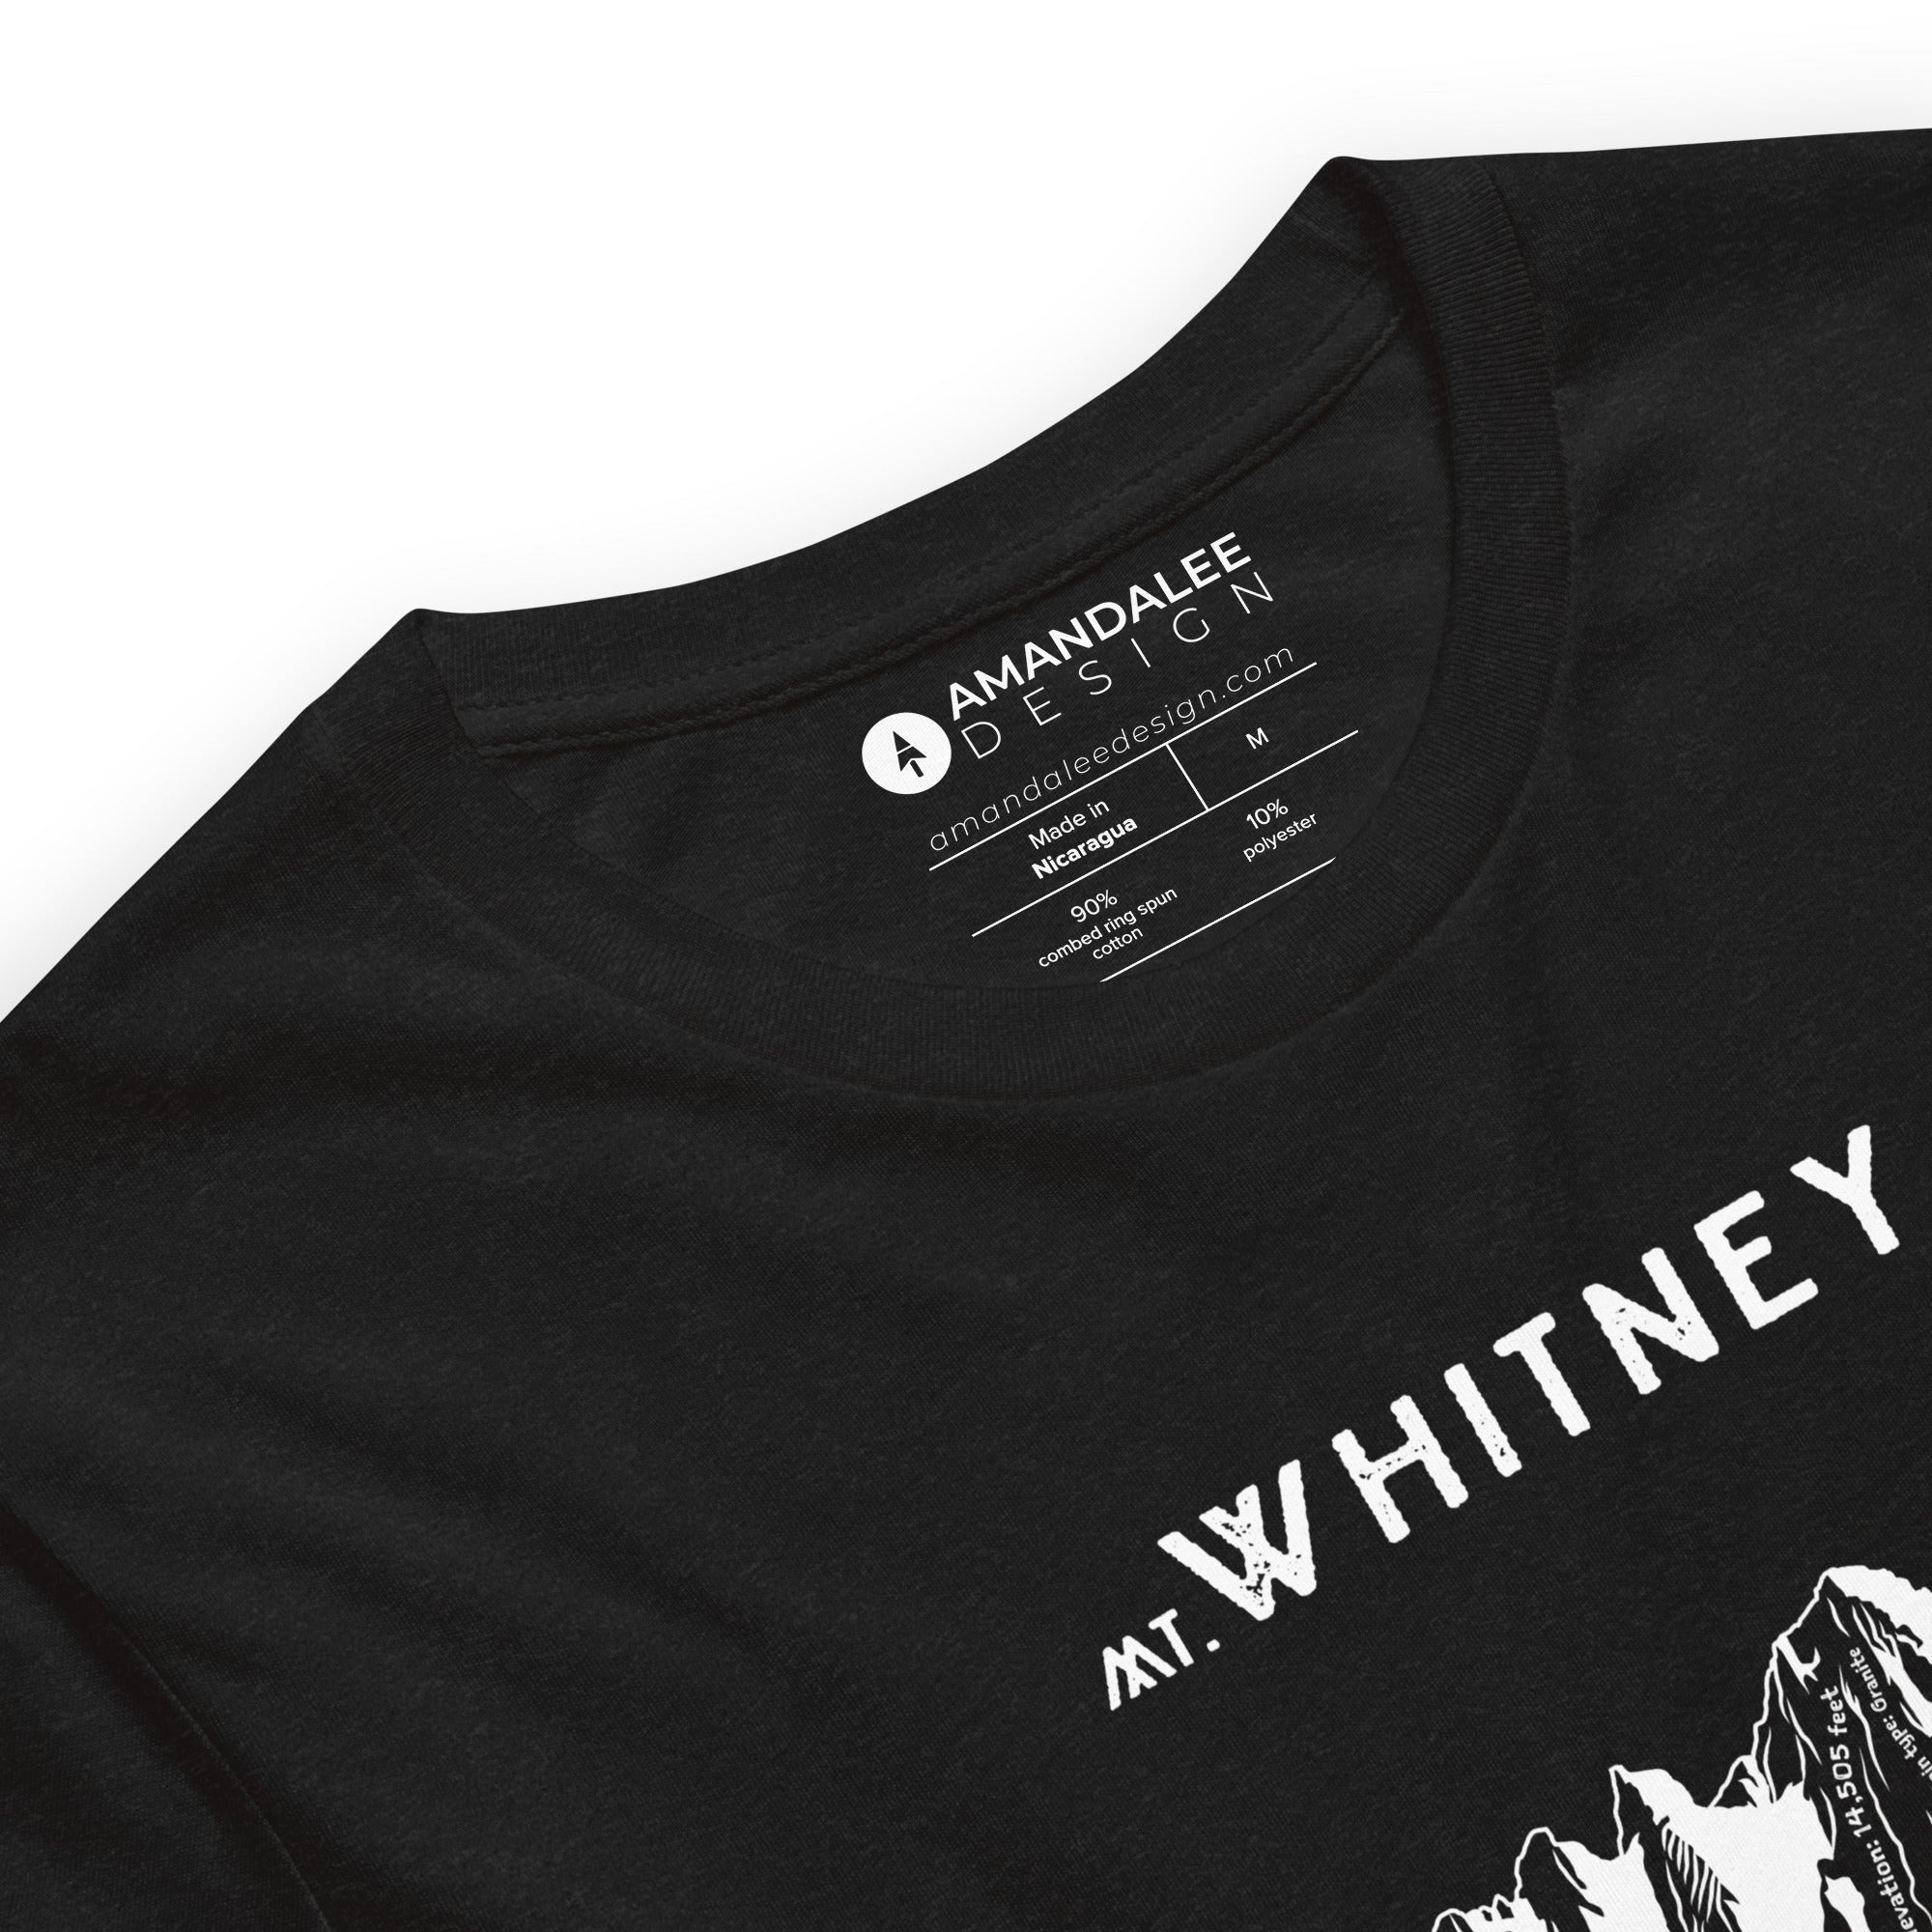 Mount Whitney Short-Sleeve Unisex Shirt